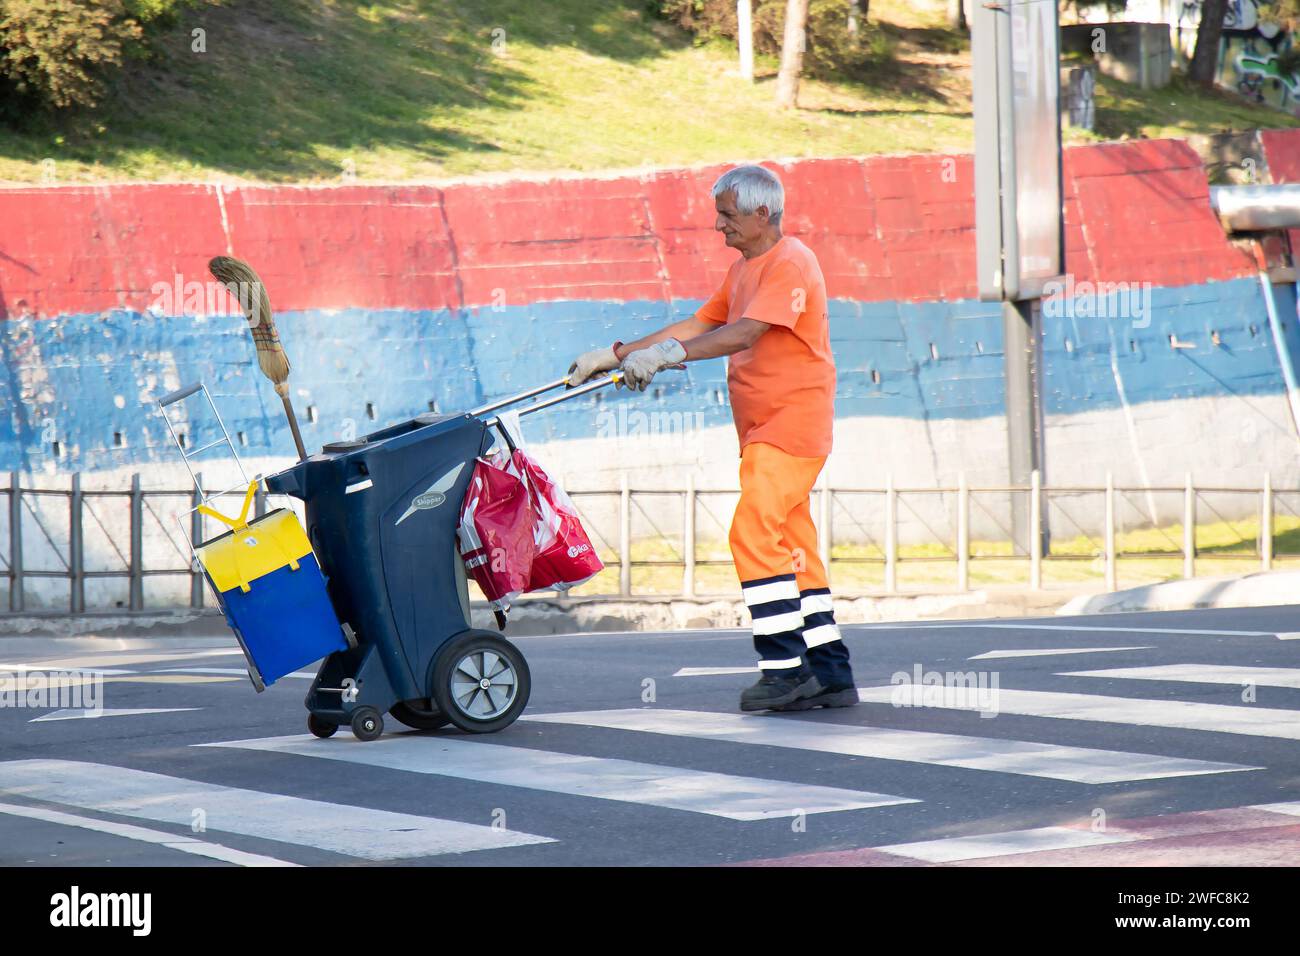 Belgrade, Serbie - 5 juin 2021 : le collecteur d'ordures du service public de la ville traverse la rue tout en poussant le chariot de poubelle de taille avec balai et dustbi Banque D'Images